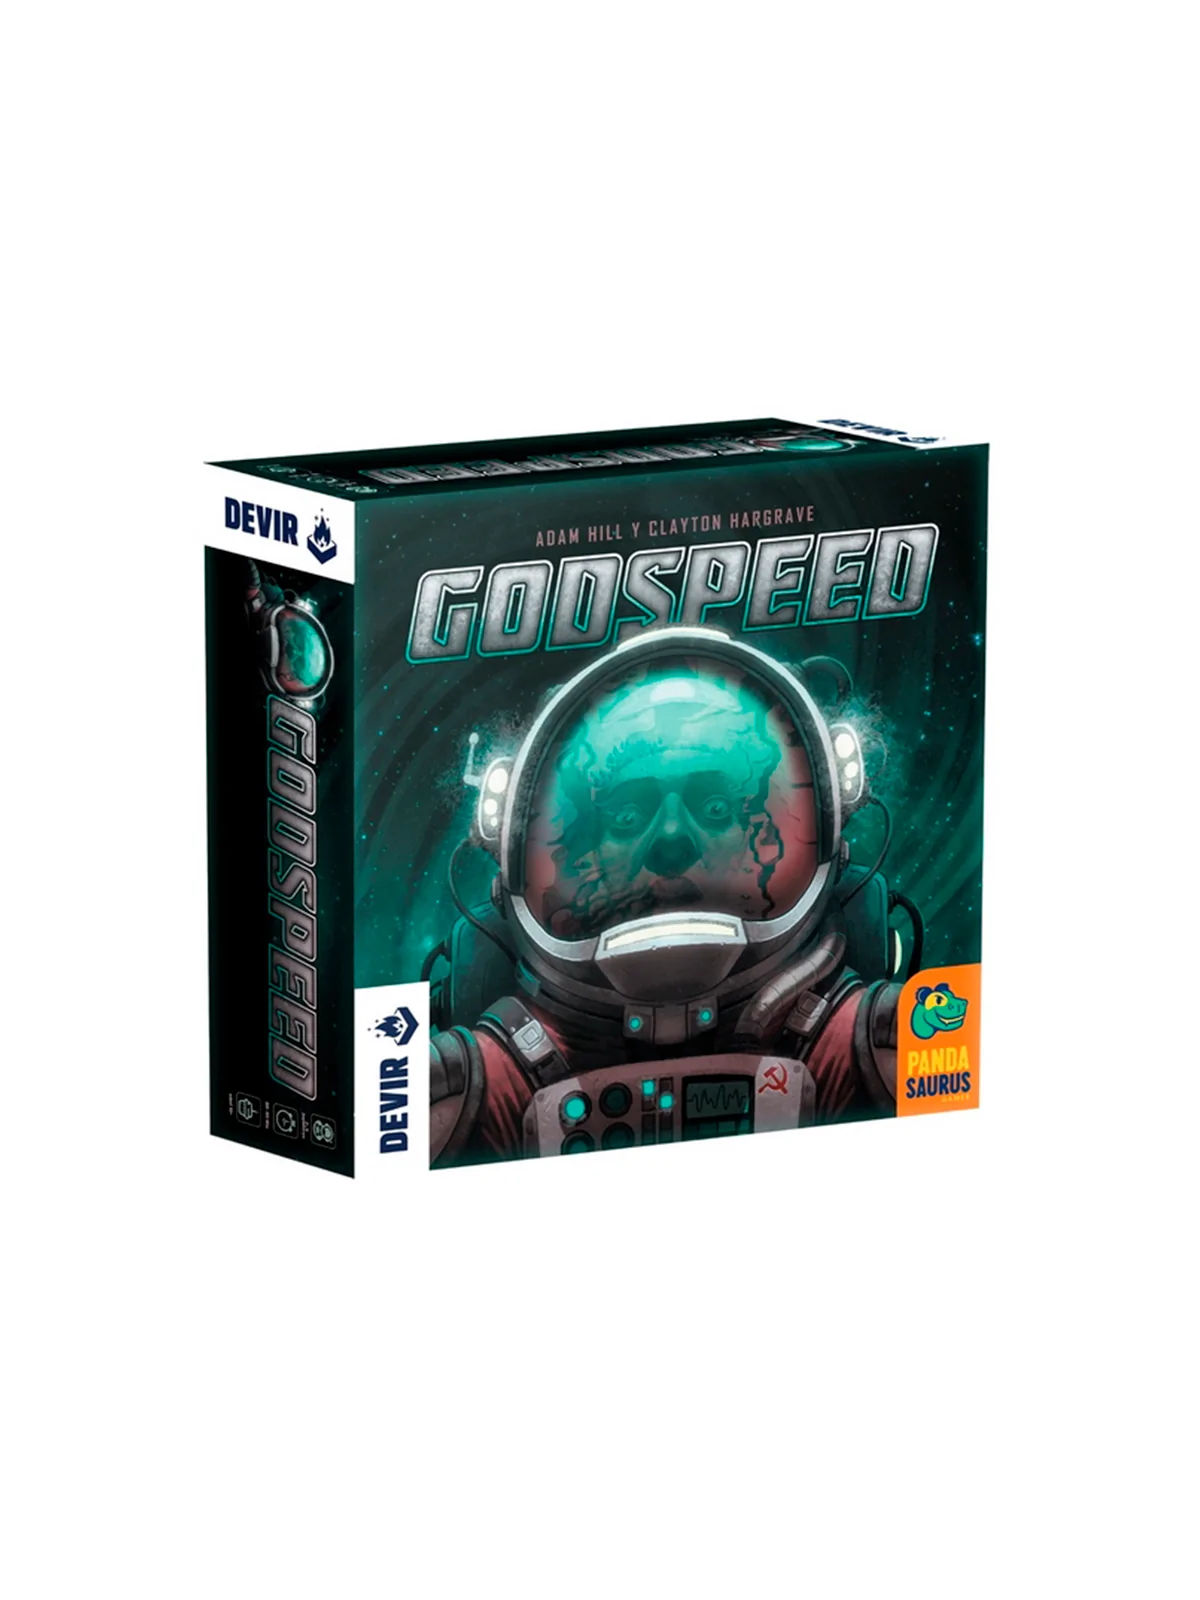 Comprar Godspeed barato al mejor precio 42,50 € de Devir